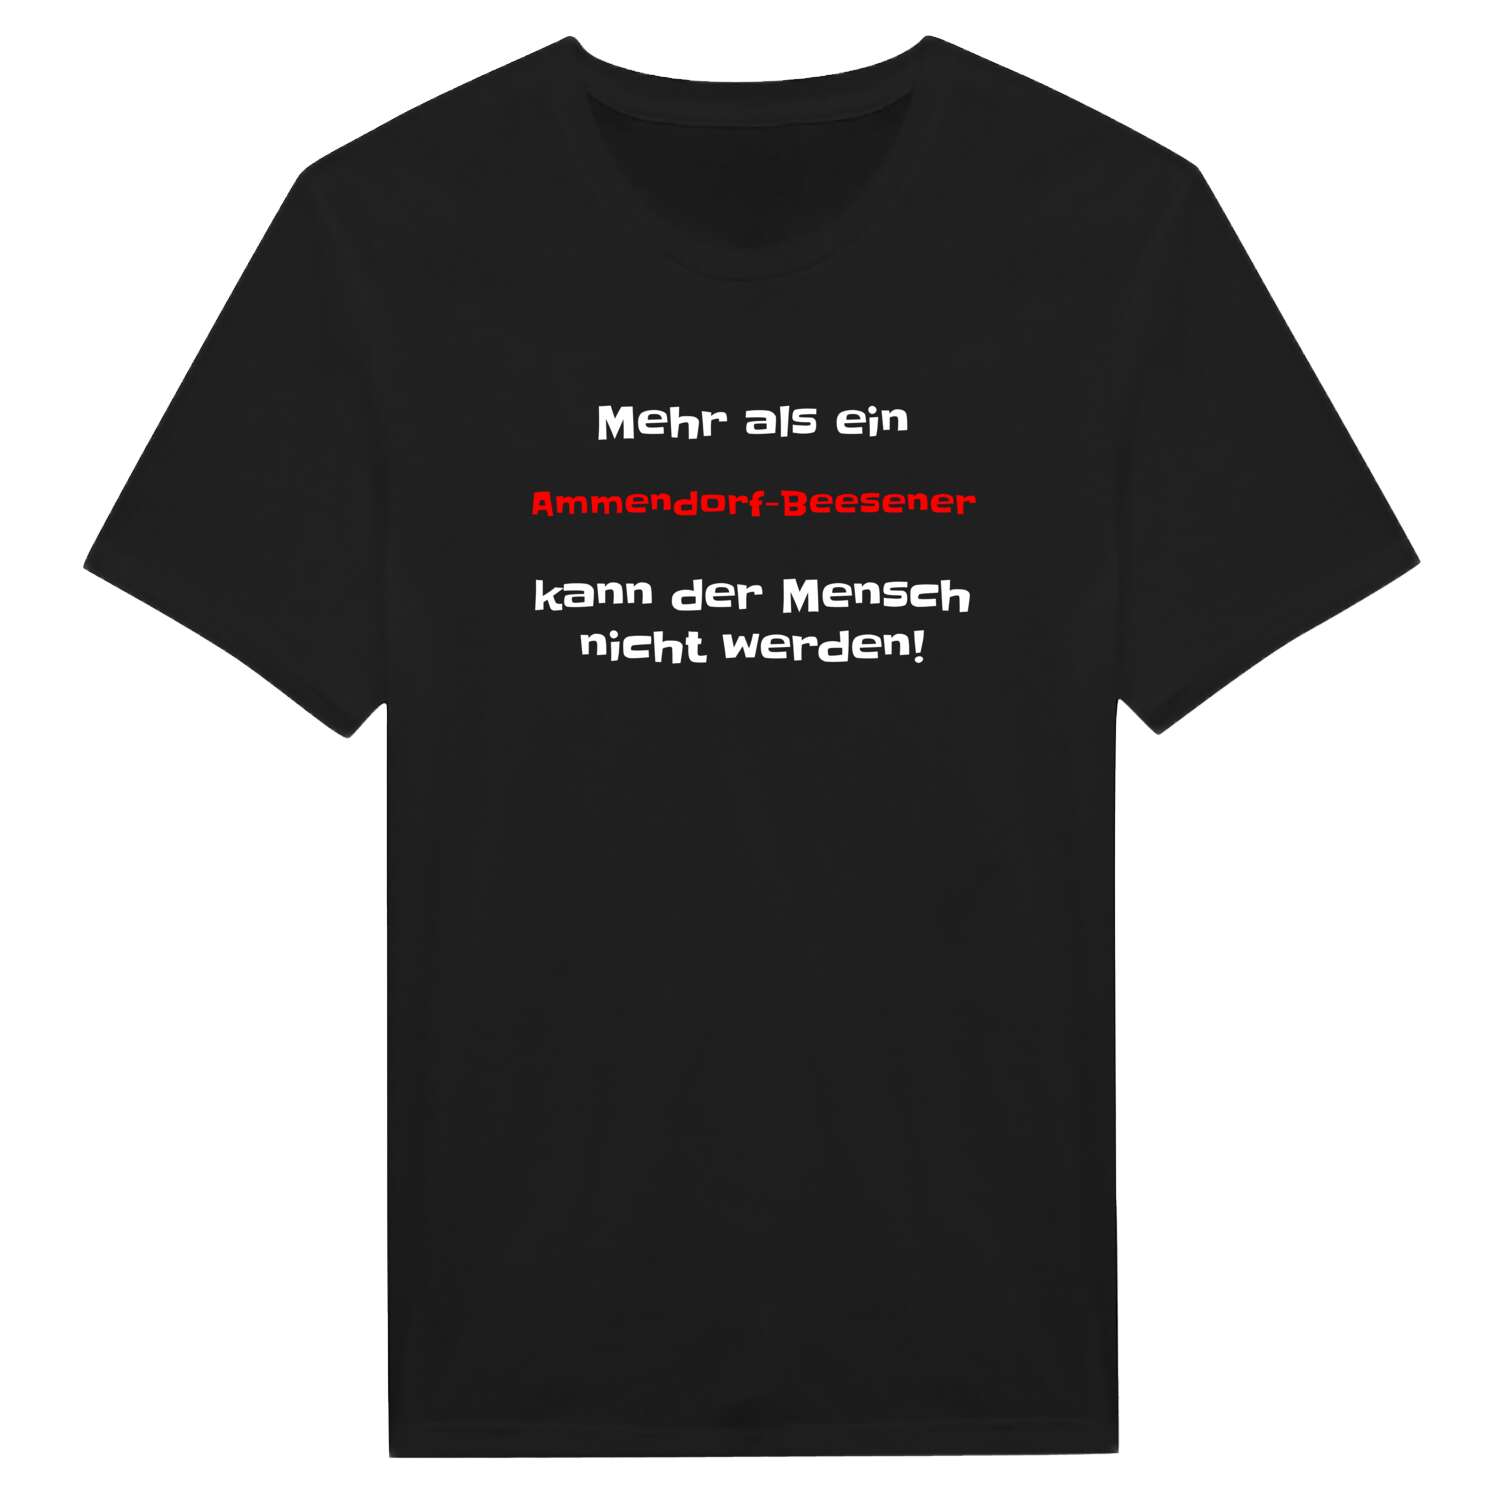 Ammendorf-Beesen T-Shirt »Mehr als ein«